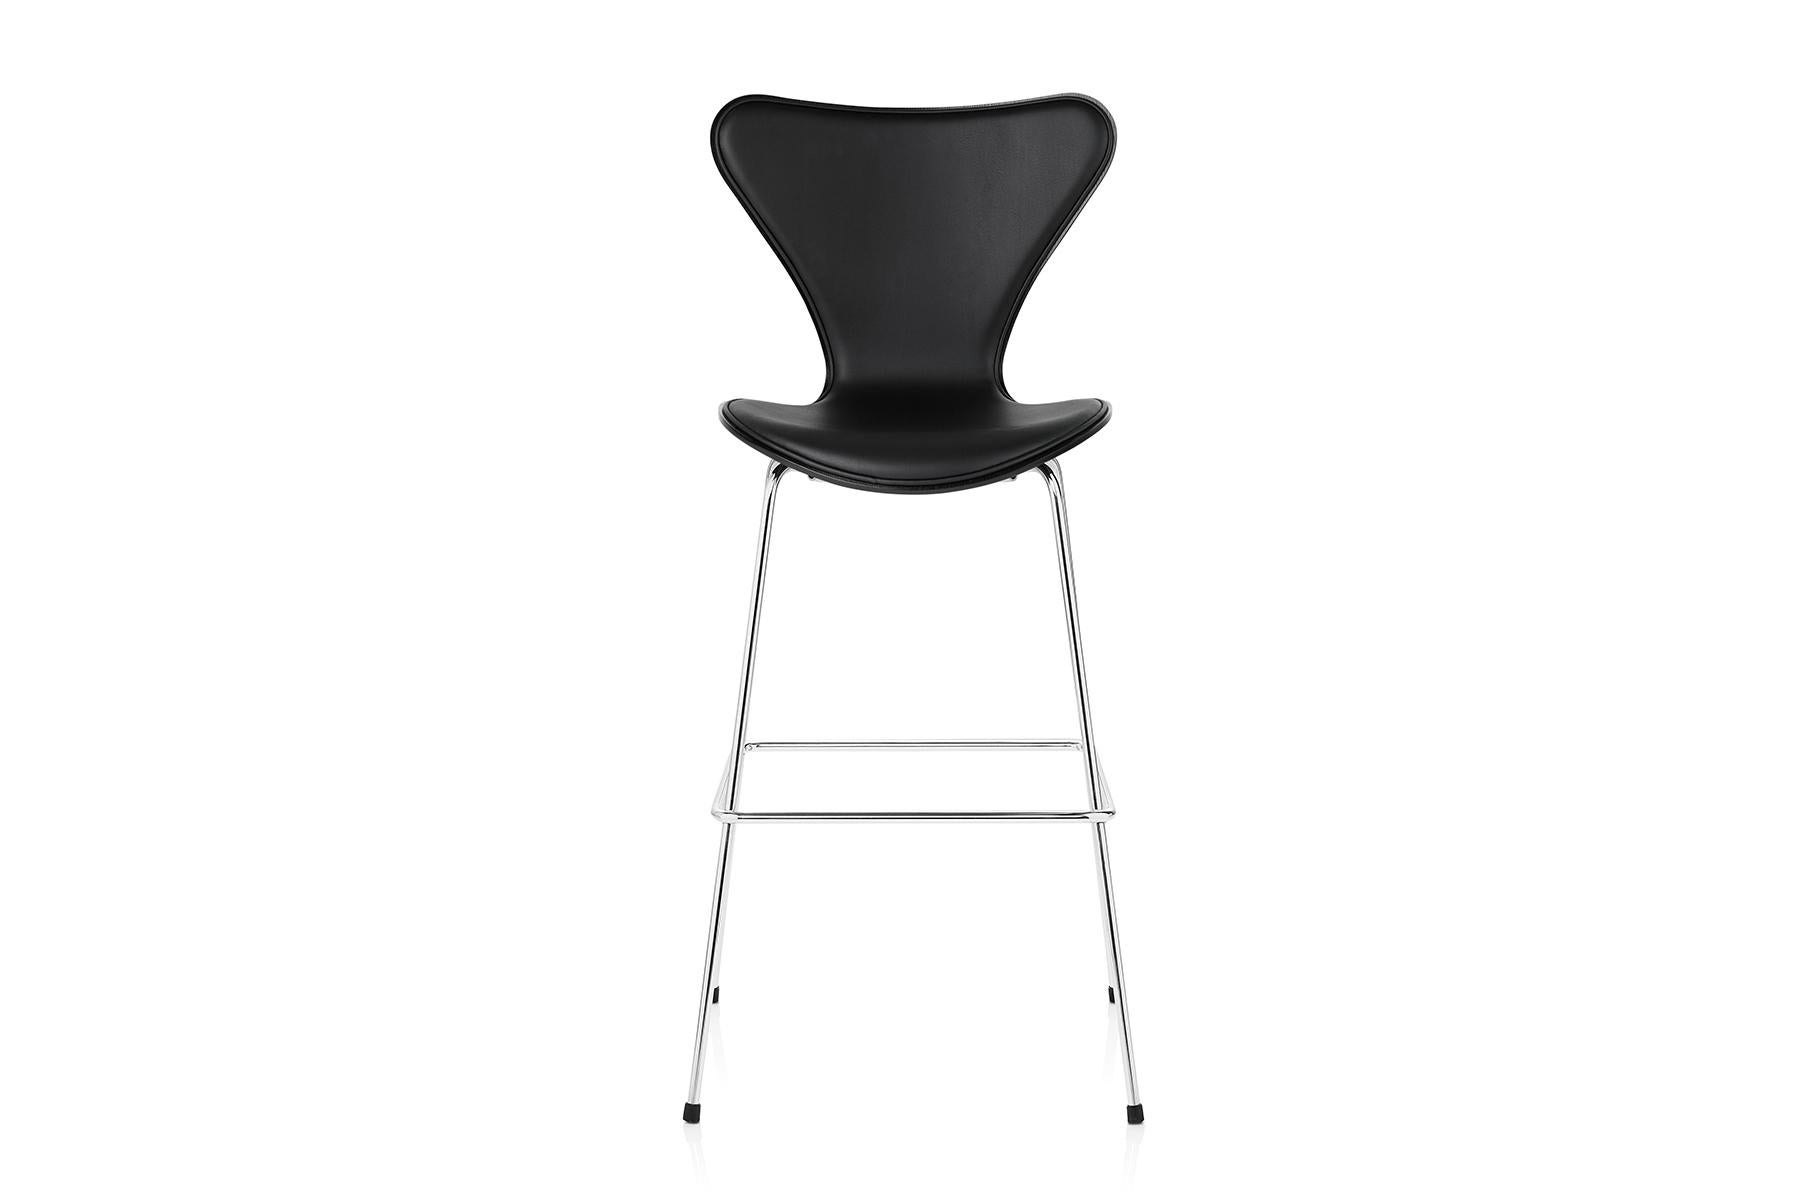 Der Barhocker Serie 7 ist eine schöne, funktionale und urbane Erweiterung des klassischen Stuhls Serie 7, der 1955 von Arne Jacobsen entworfen wurde. Der Stuhl ist mit Abstand der meistverkaufte Stuhl in der Geschichte von Fritz Hansen und